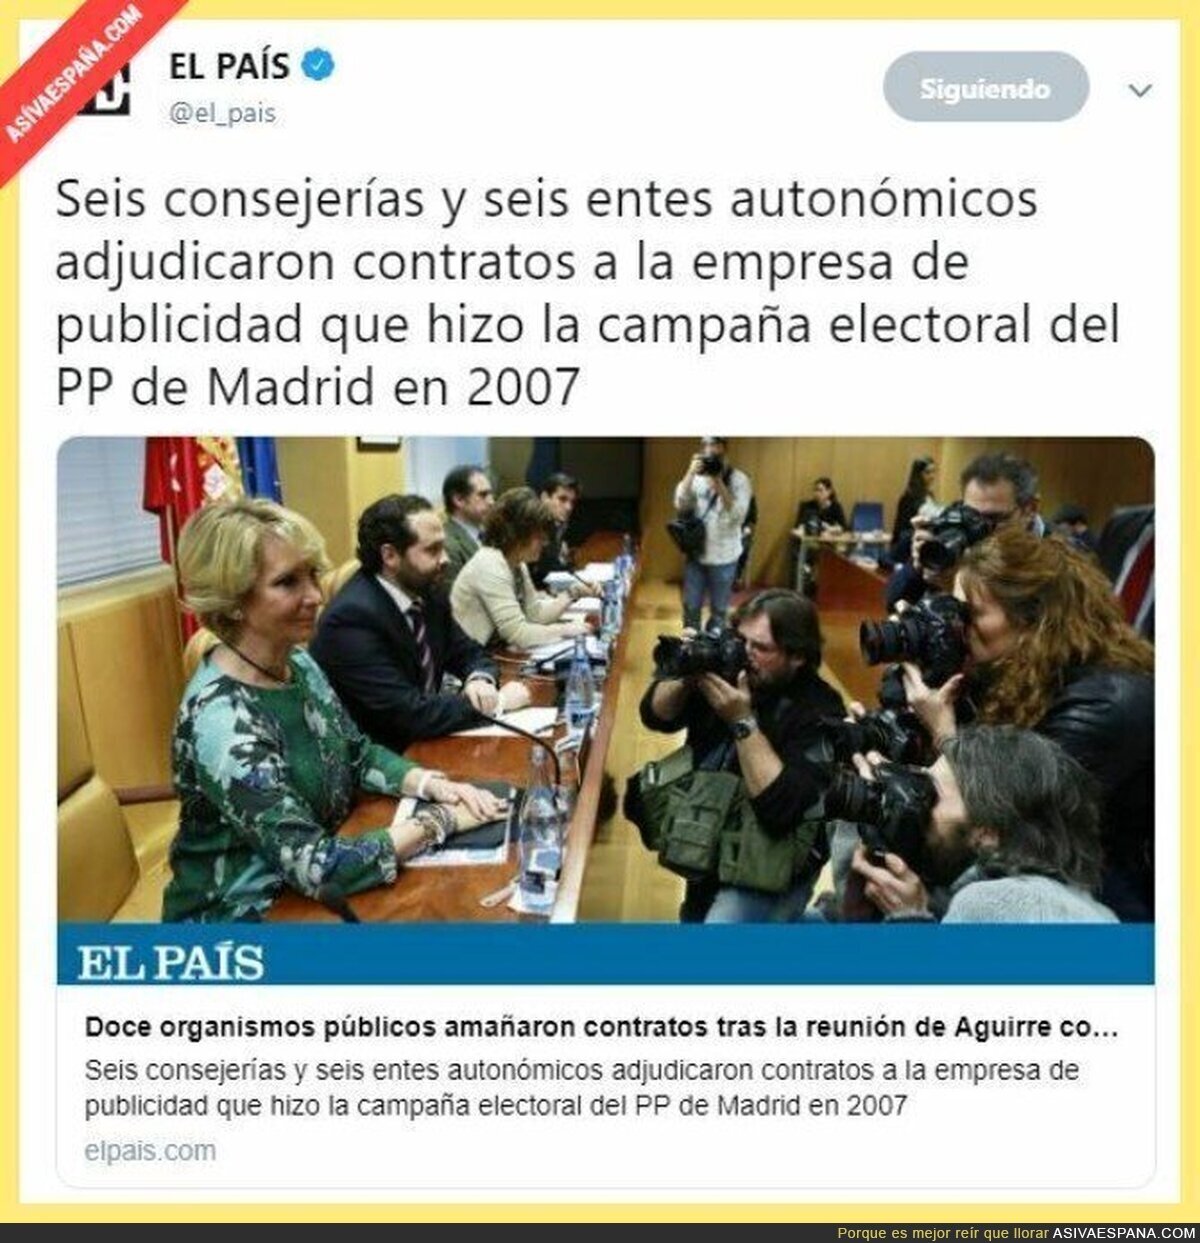 Mamá Aguirre y sus corruptelas no tienen fin en su organización criminal